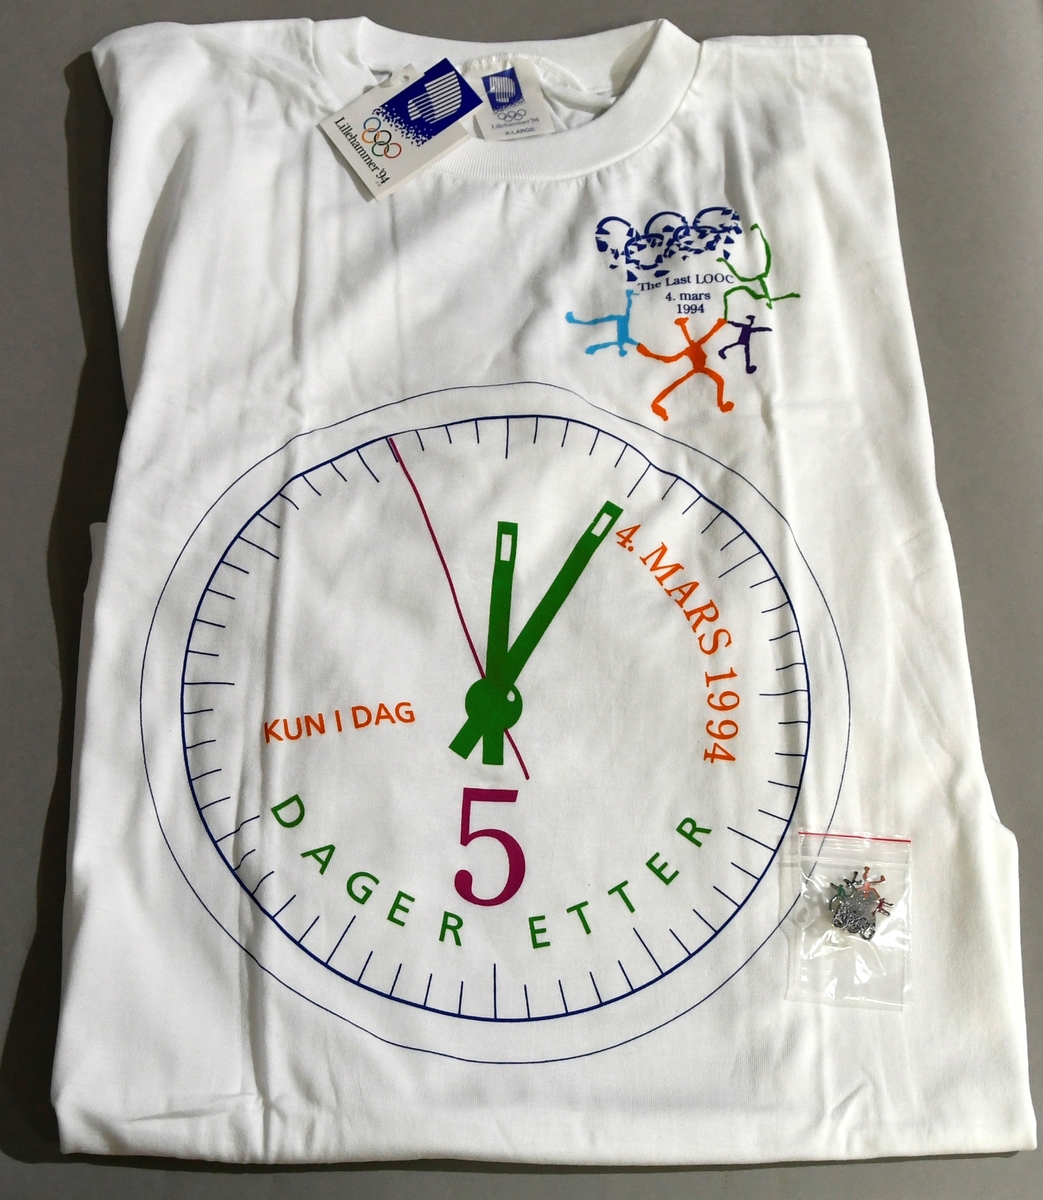 T-skjorte med klokke der viserne viser  kl. 12.05. På høyre bryst  knuste olympiske ringer og etterligning av ol-piktogrammer.